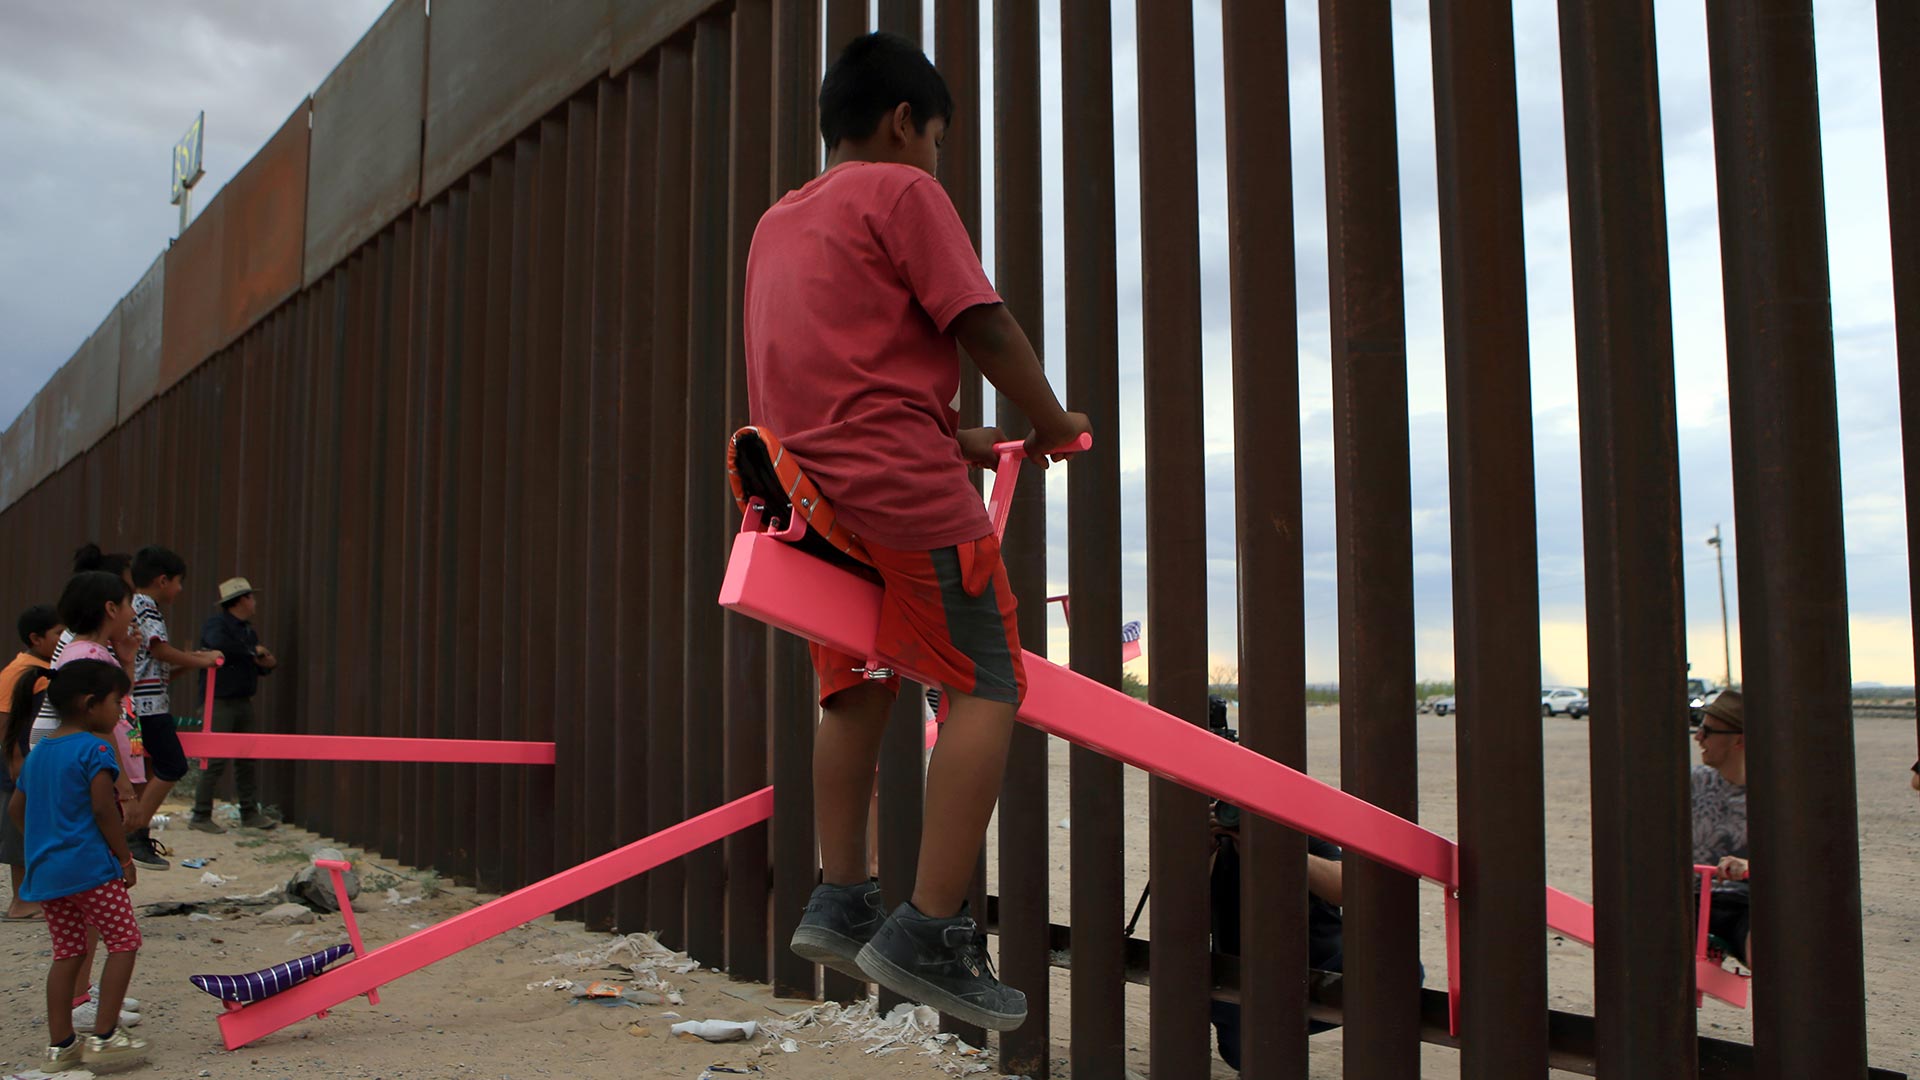 Colocan balancines en la frontera entre México y EEUU para que los niños jueguen